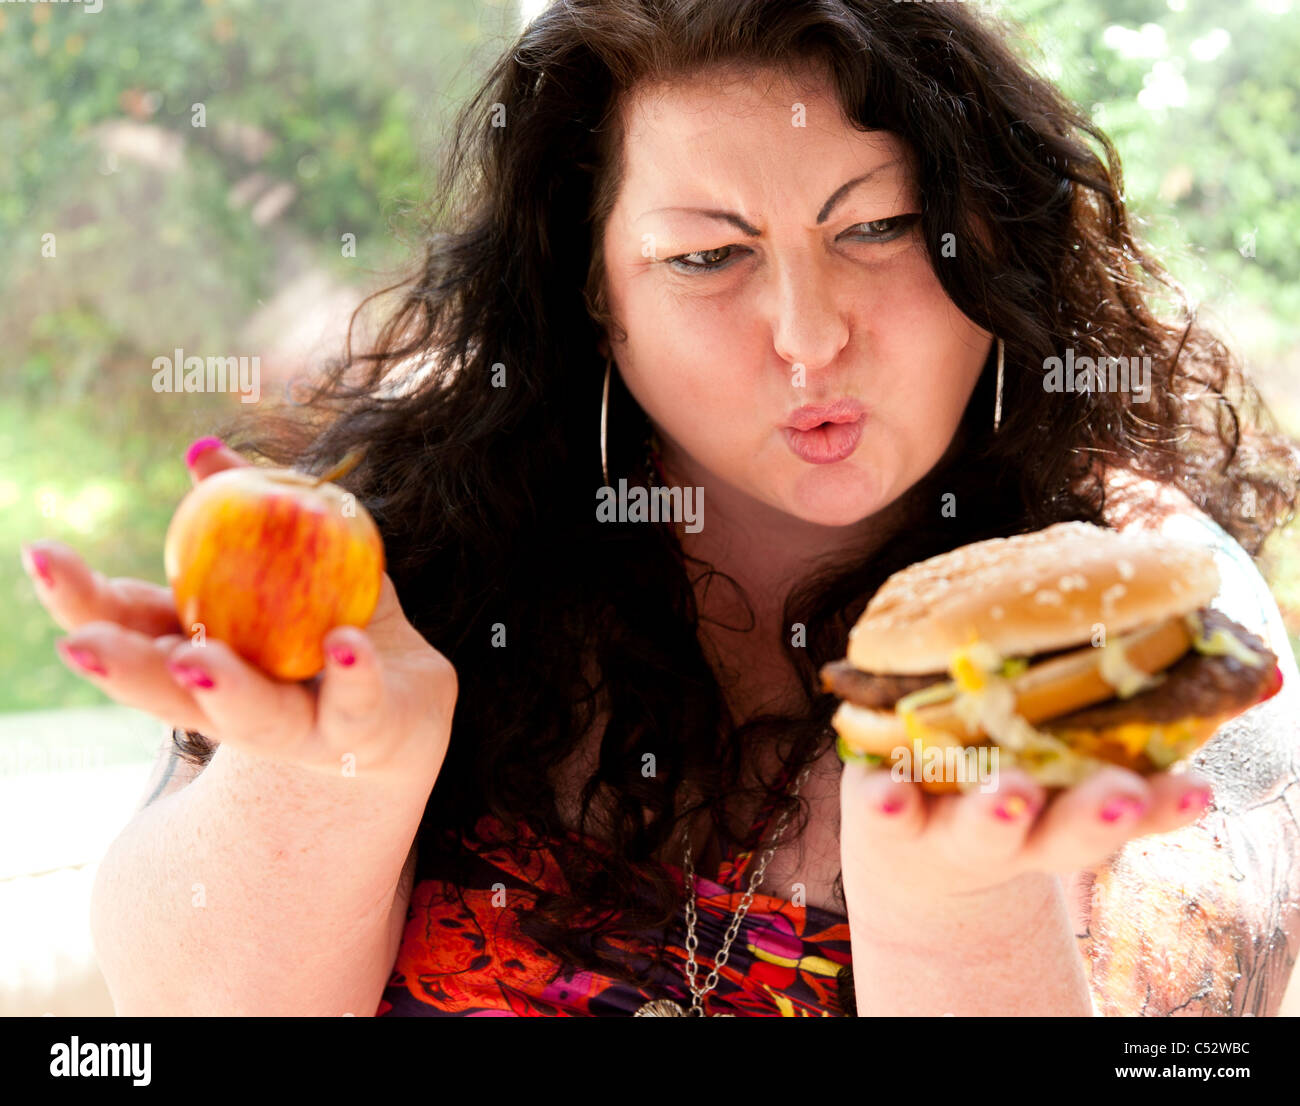 Frau, fetthaltige Lebensmittel essen Stockfoto